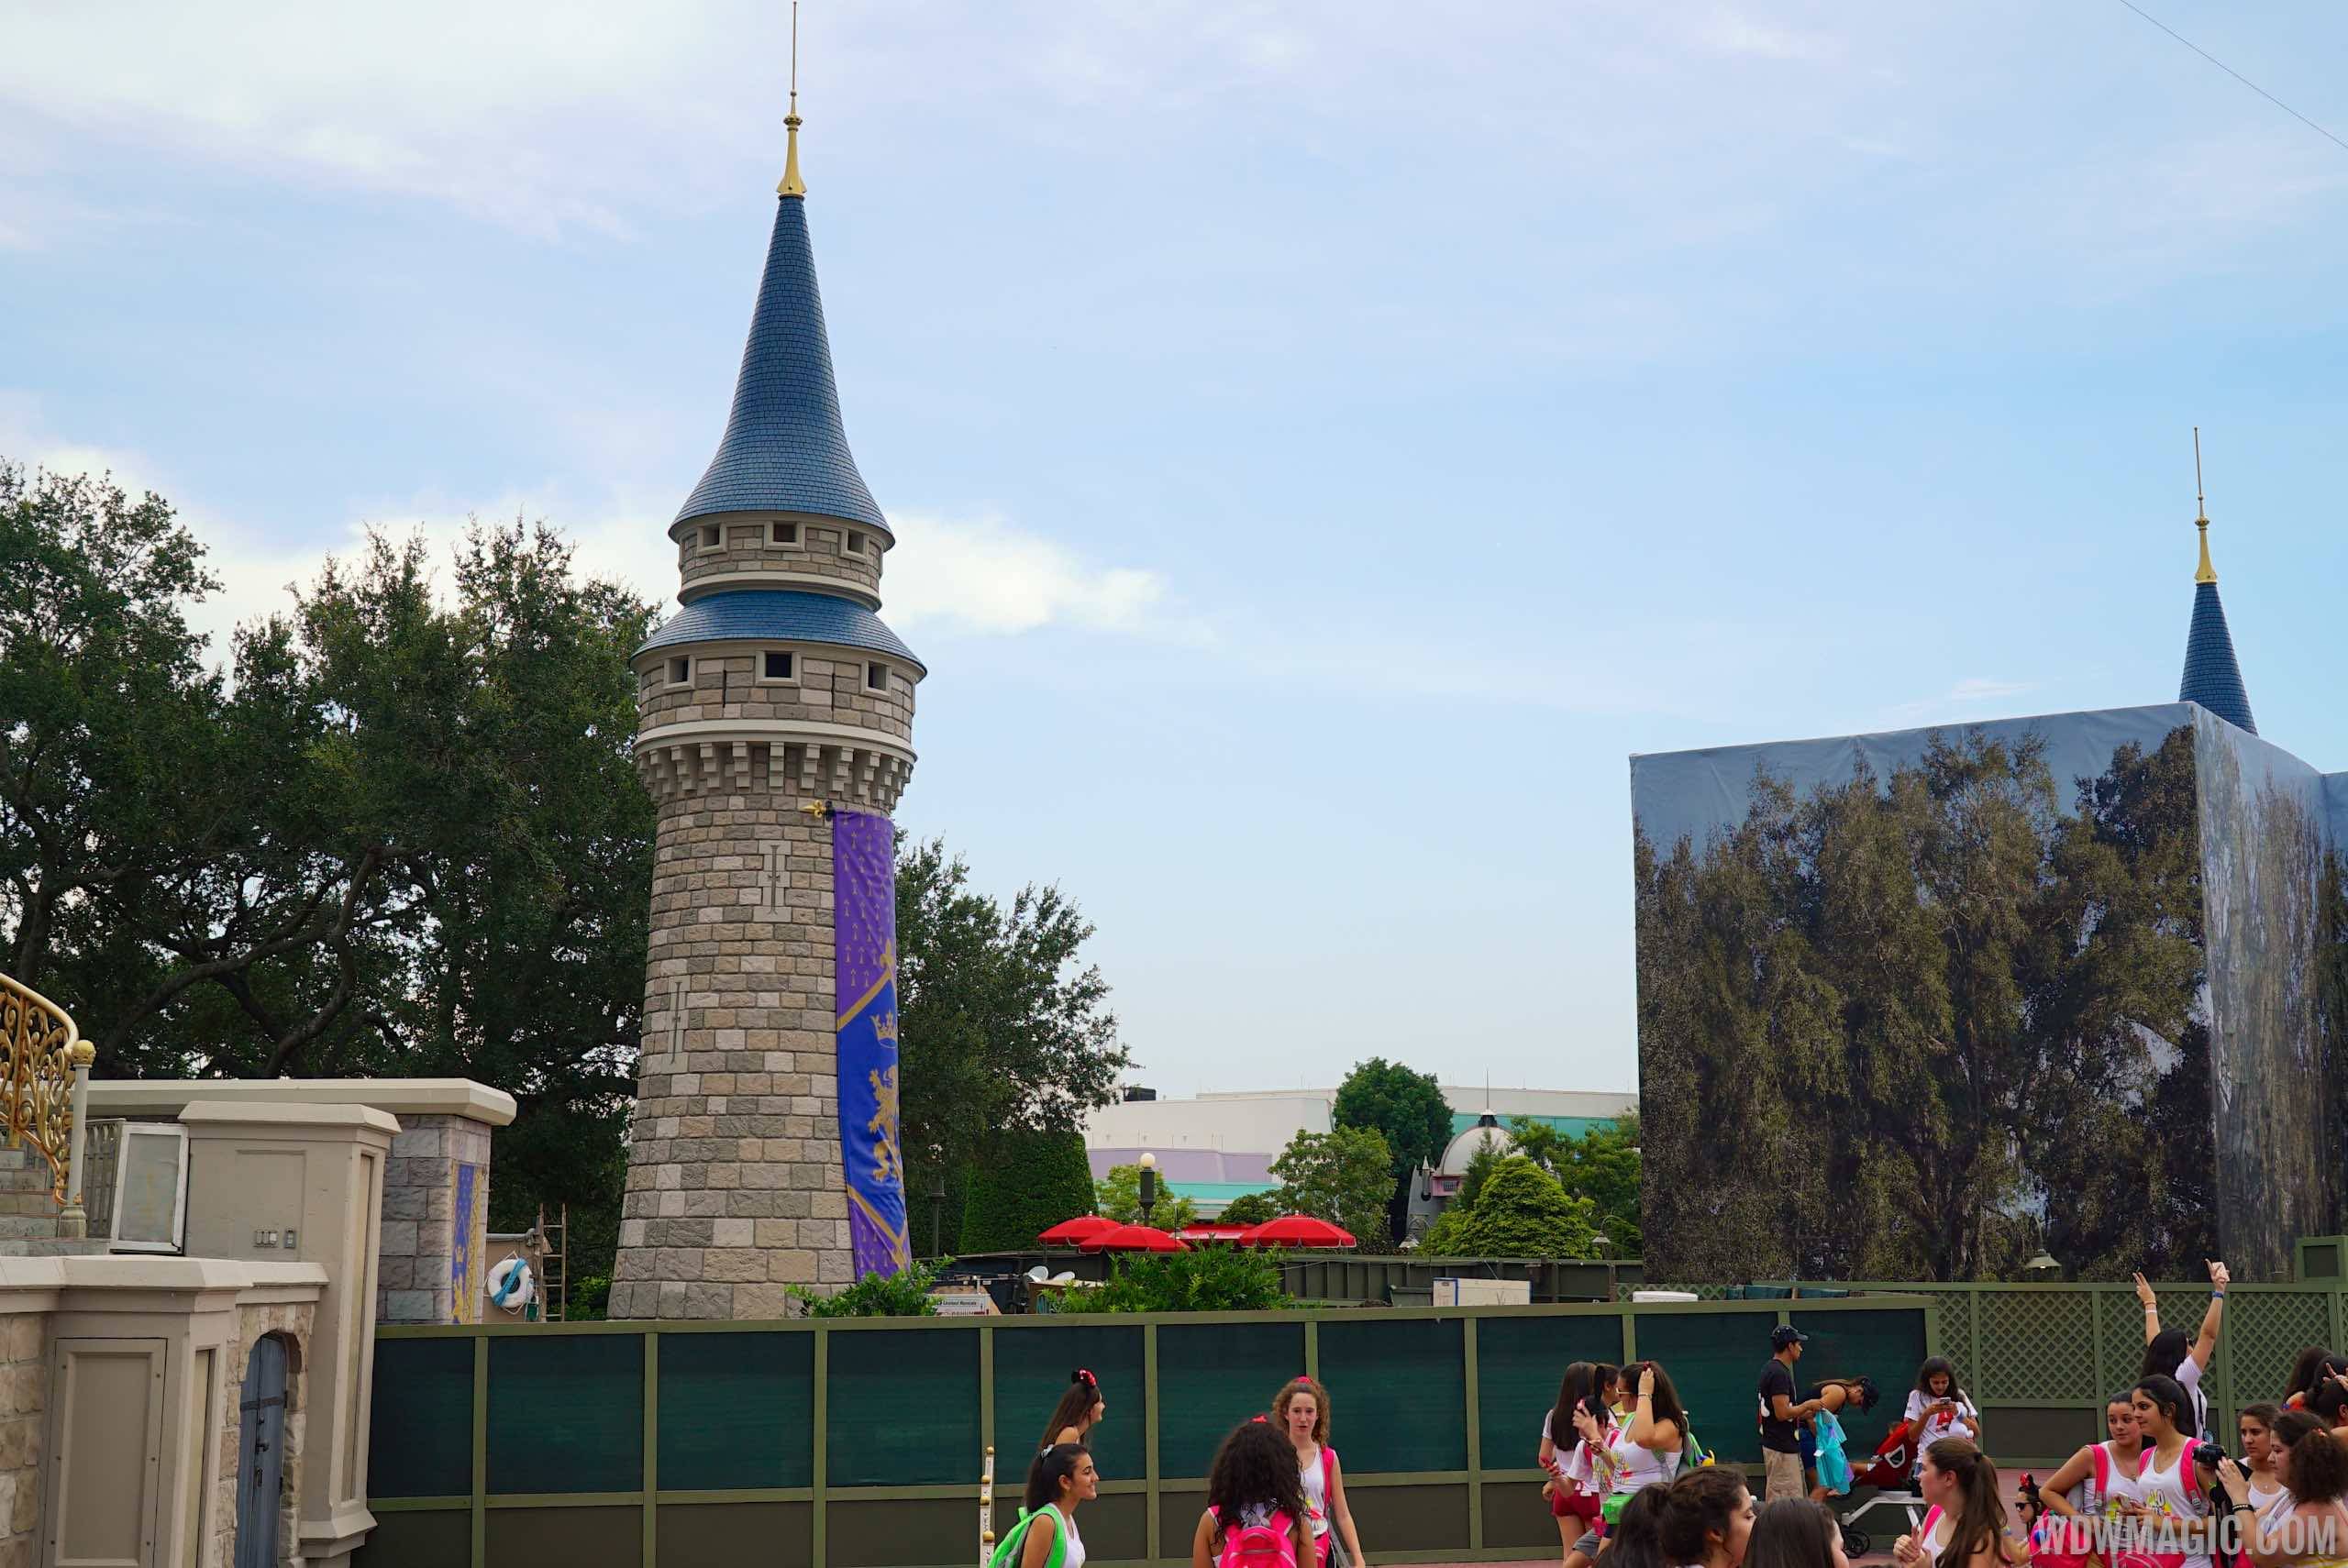 New Cinderella Castle turrets